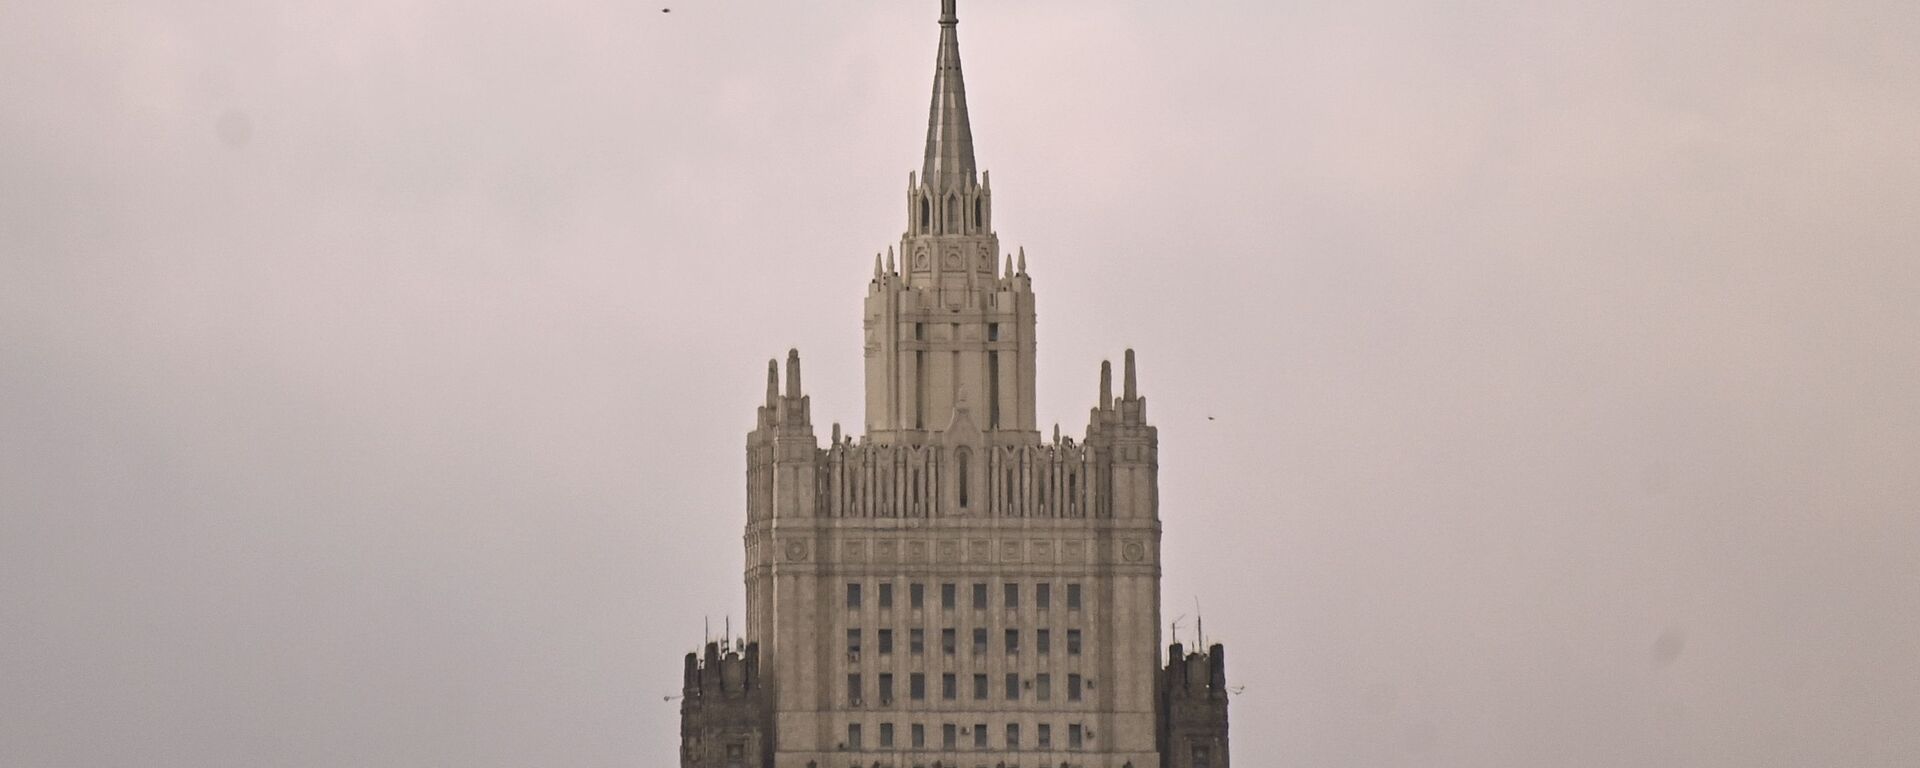 Zgrada Ministarstva spoljnih poslova Rusije - Sputnik Srbija, 1920, 17.04.2021